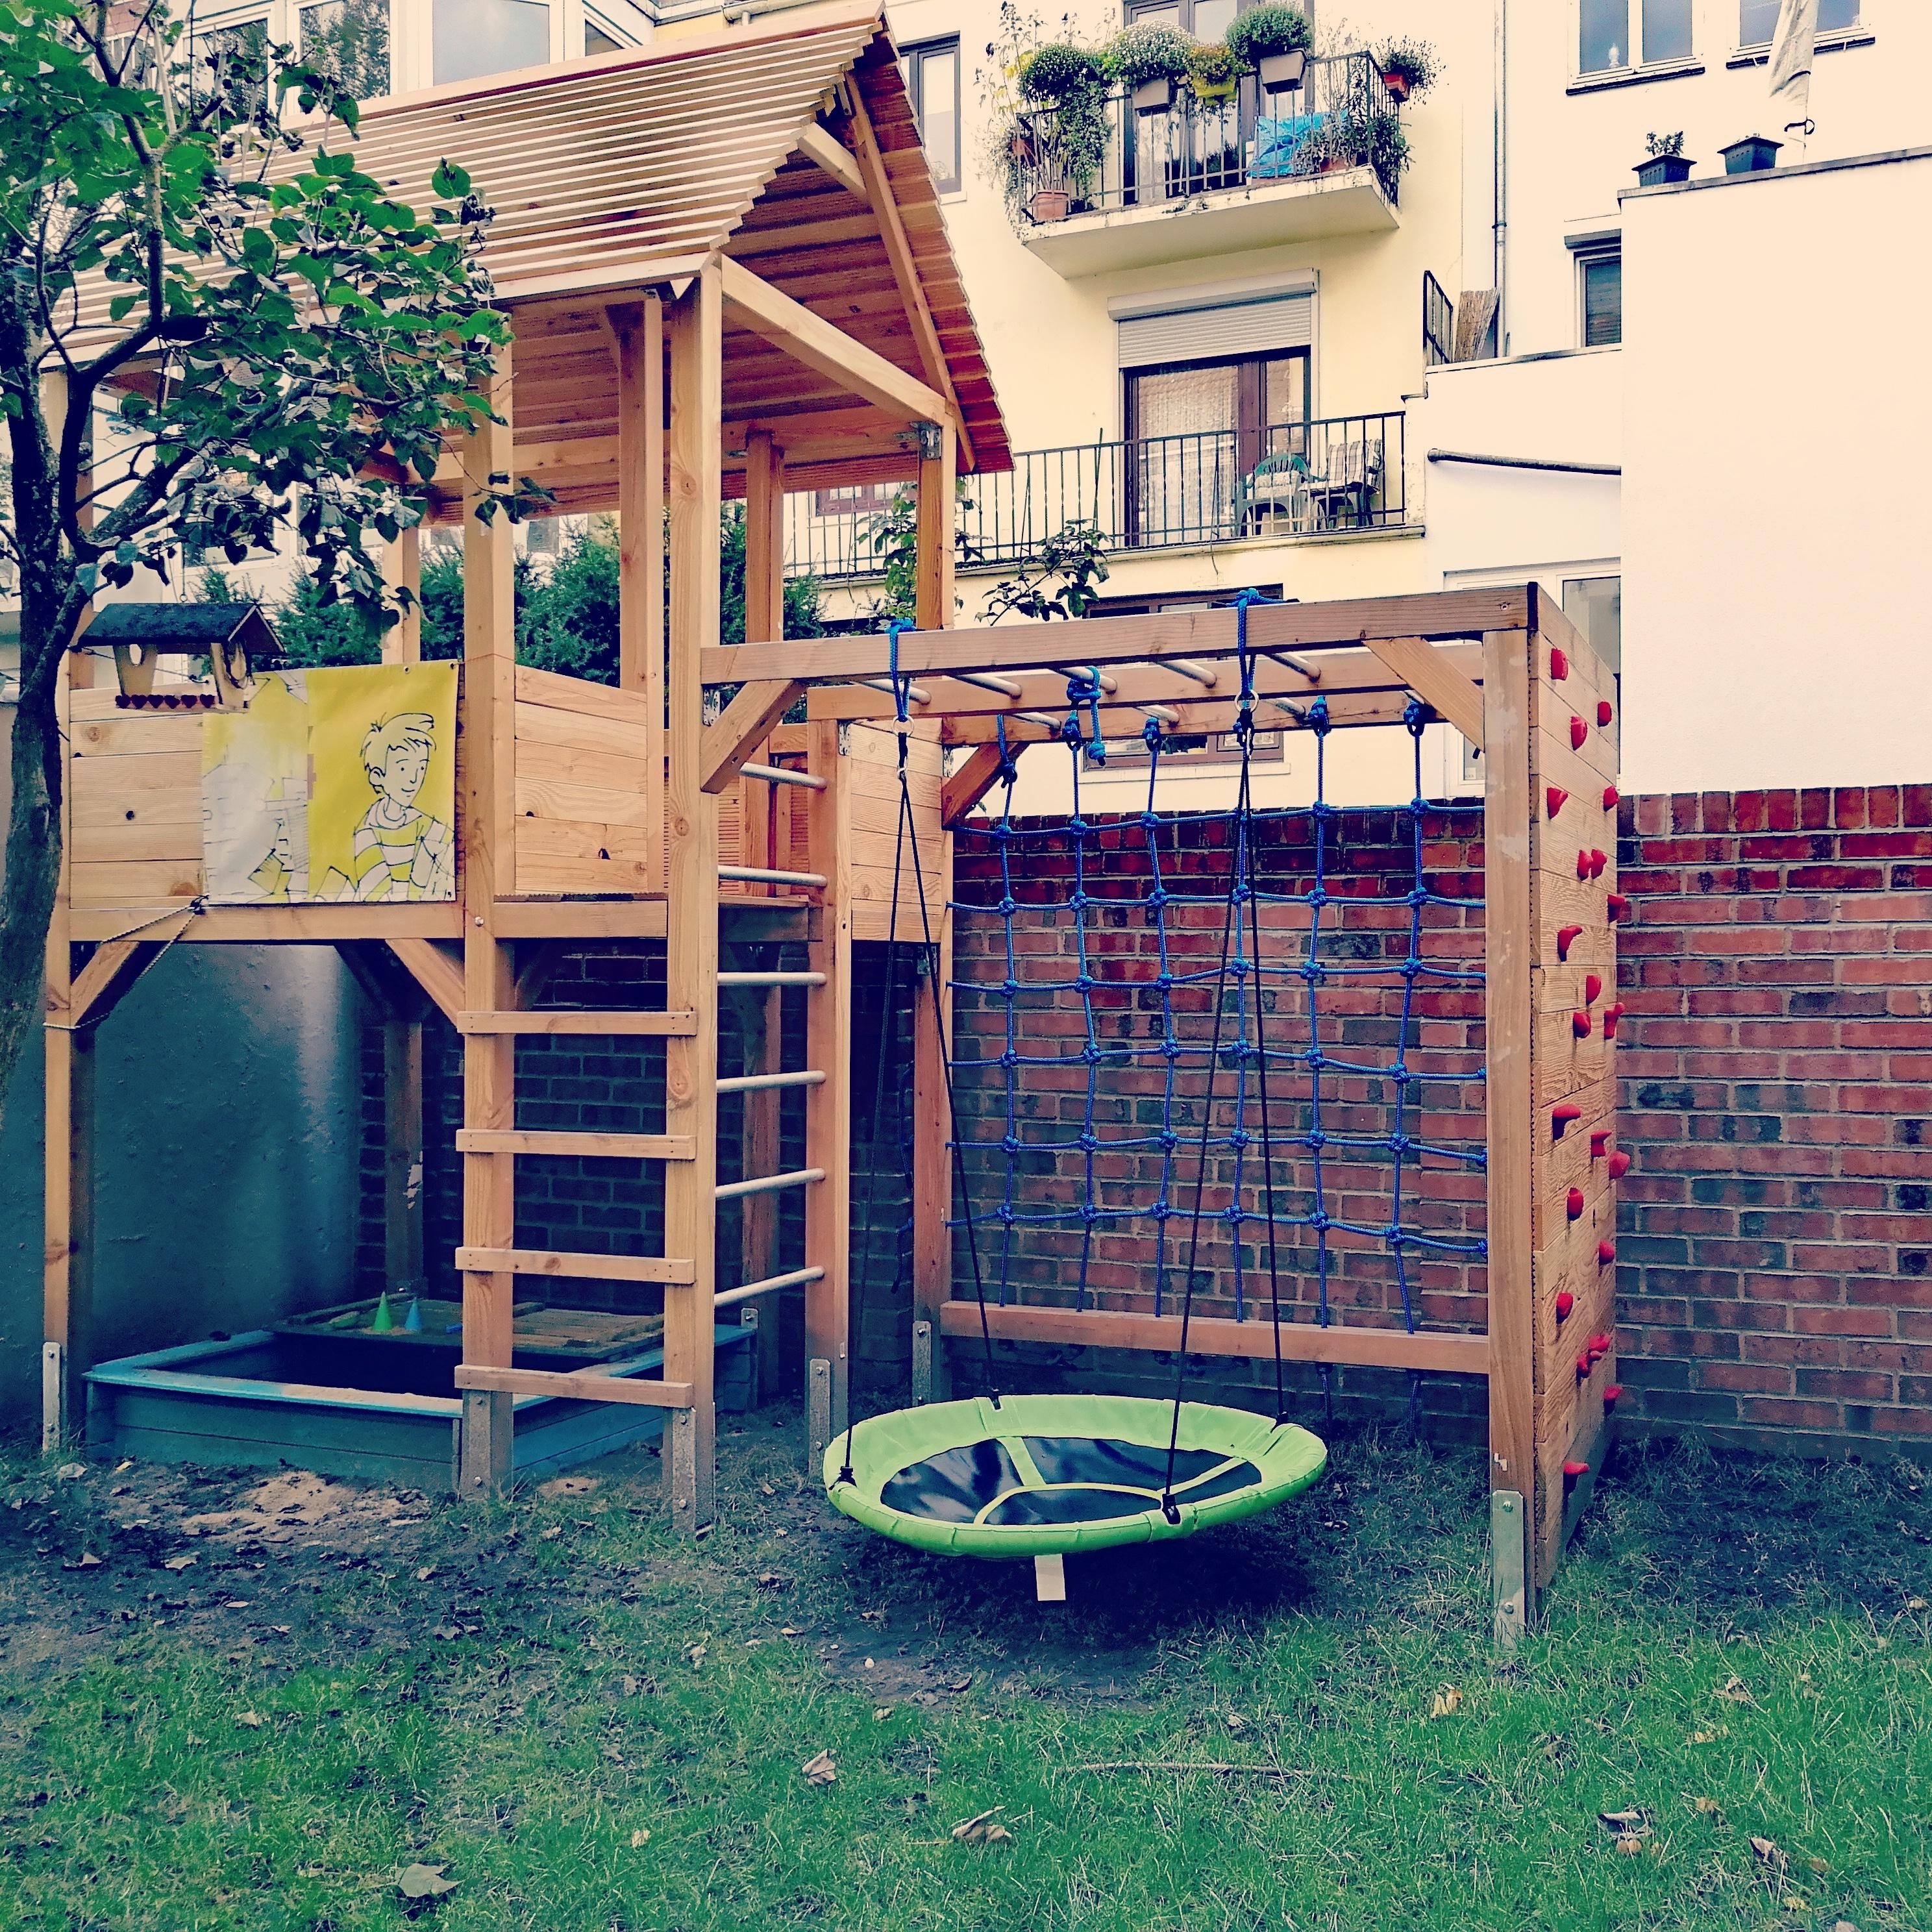 Die passgenaue Spielecke ist fast fertig...#diy #livingwithkids #urbangardening #playground #backyard #spielturm #outdo